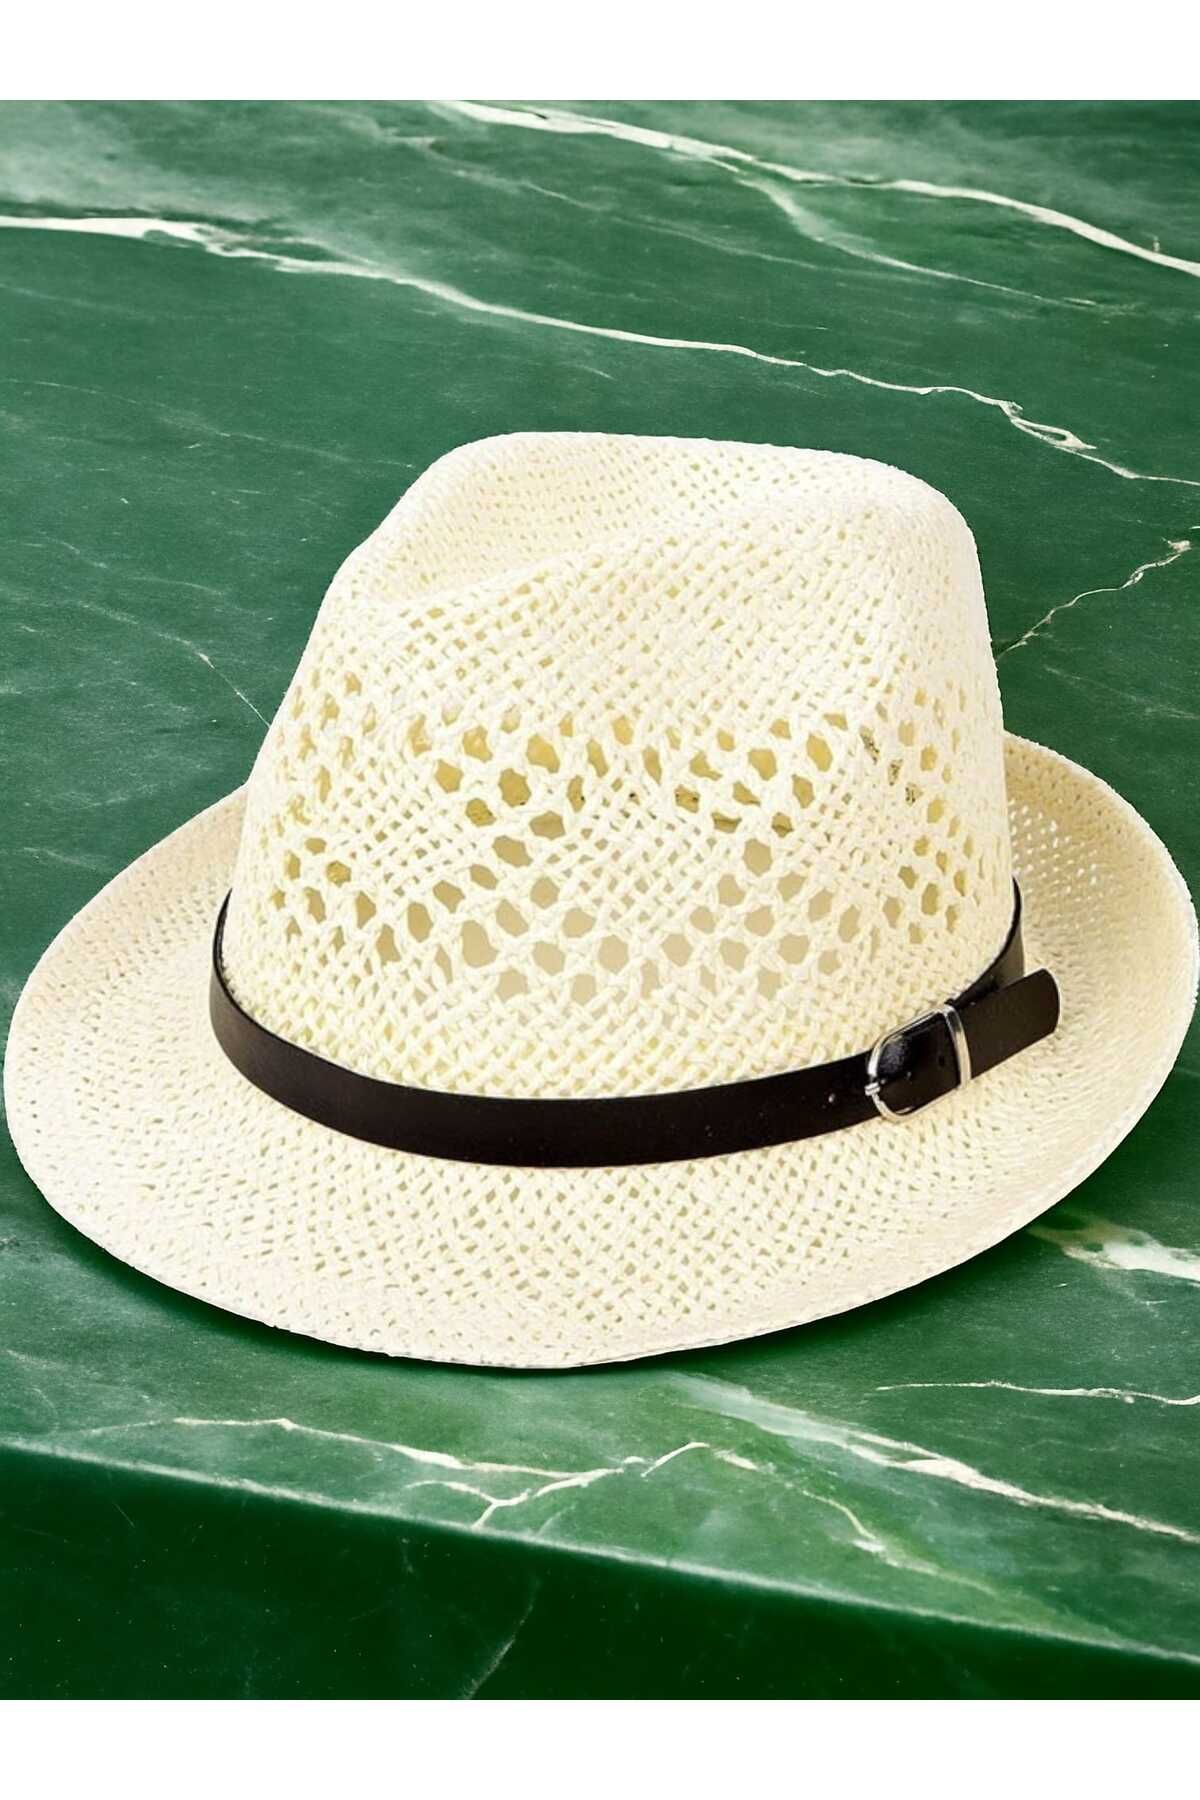 Mood Agenda Unisex Yazlık Organik Örme Tokalı Hasır Fötr Şapka